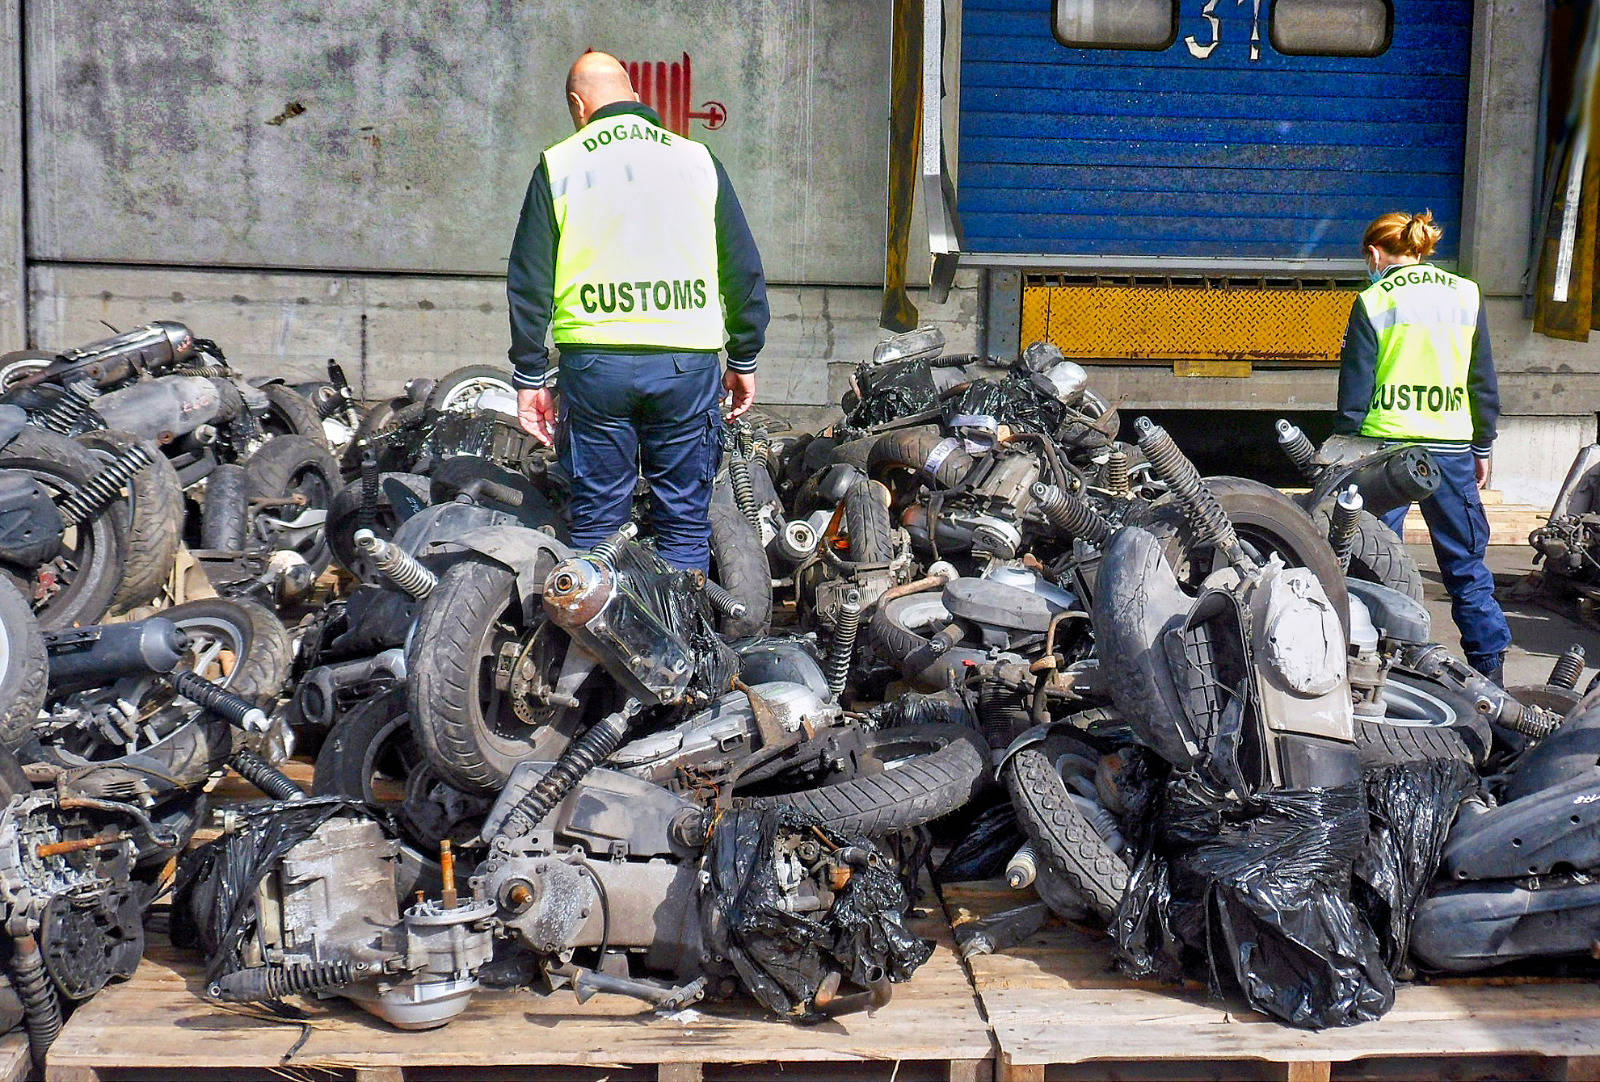 Traffico motocicli rubati: operazione al porto di Pra'